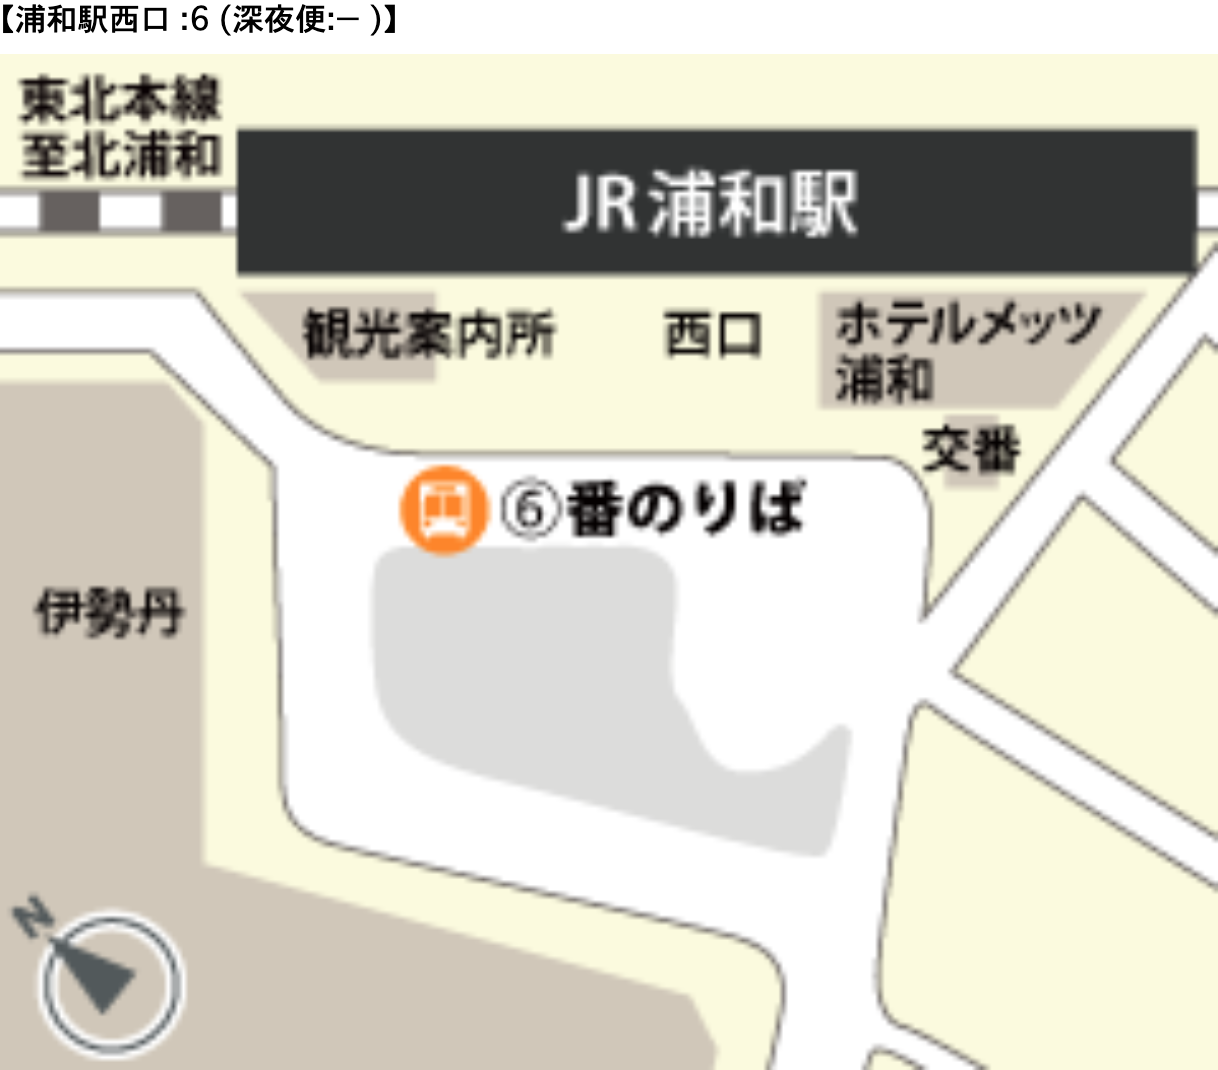 埼玉県民が羽田空港へ快適に行くには電車よりバスがおすすめな話し フォトロマ